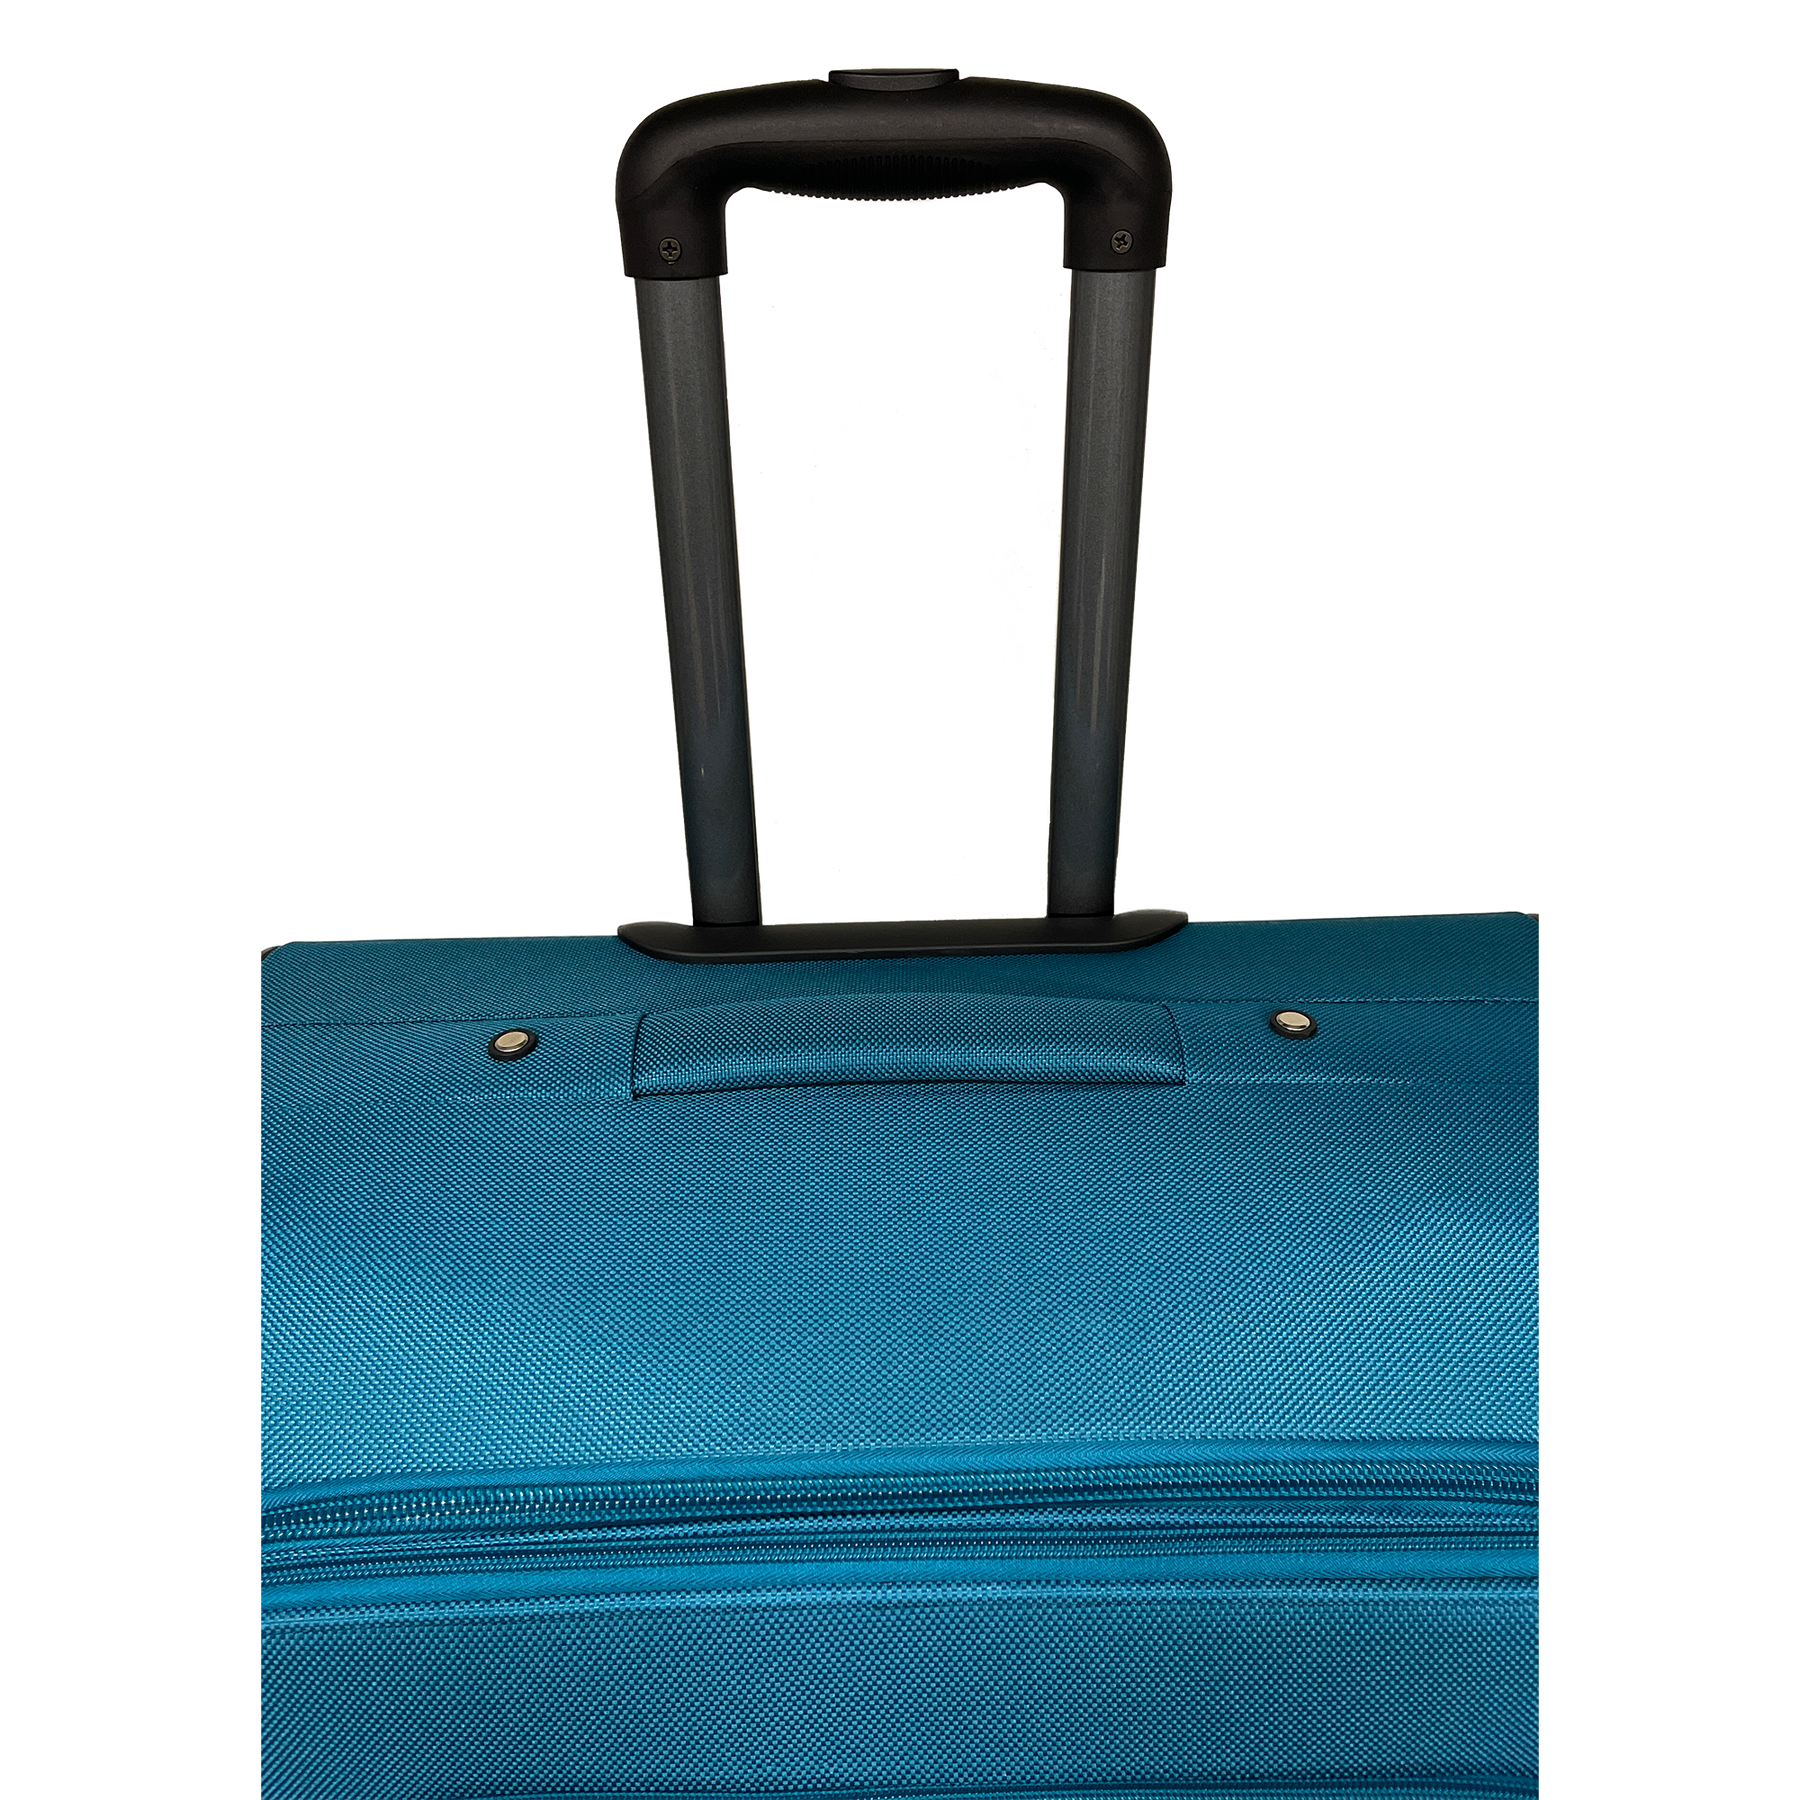 Iso laajennettava puolikova matkalaukku Ormi 75x48x30/35 cm - Iskunkestävä ja kestävä kangas